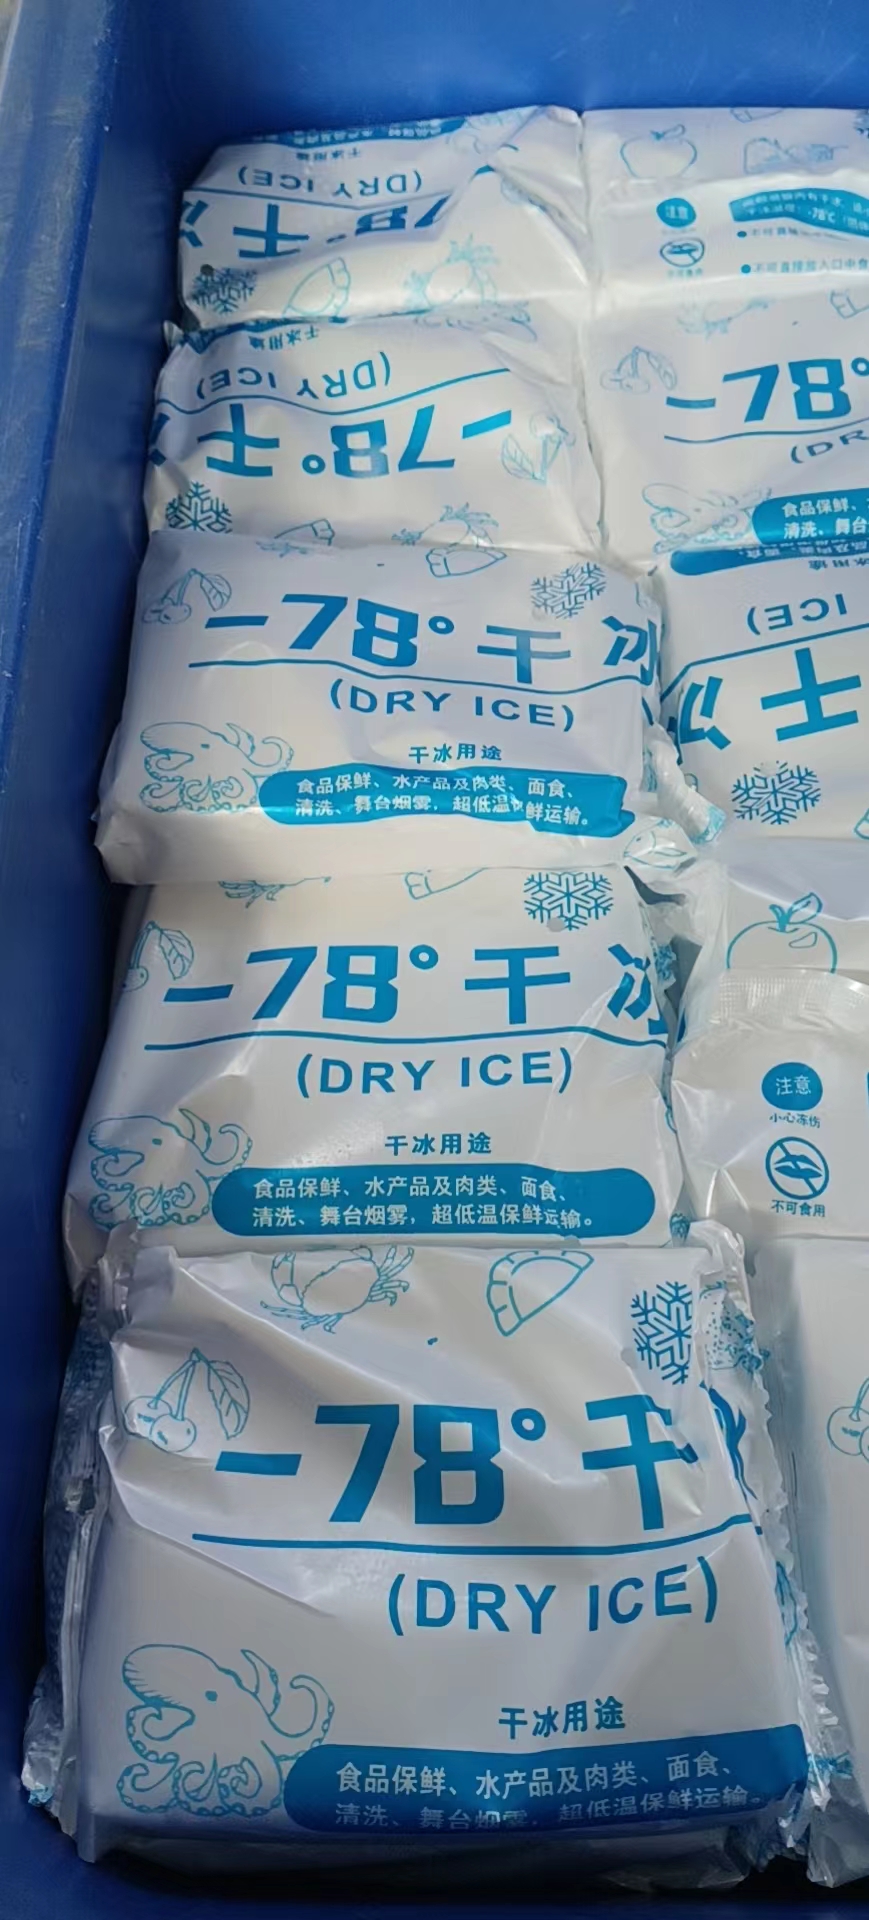 广平县供应-78°干冰配送供应商哪里有、哪家配送实惠、批发市场、厂家哪里有 安科气体